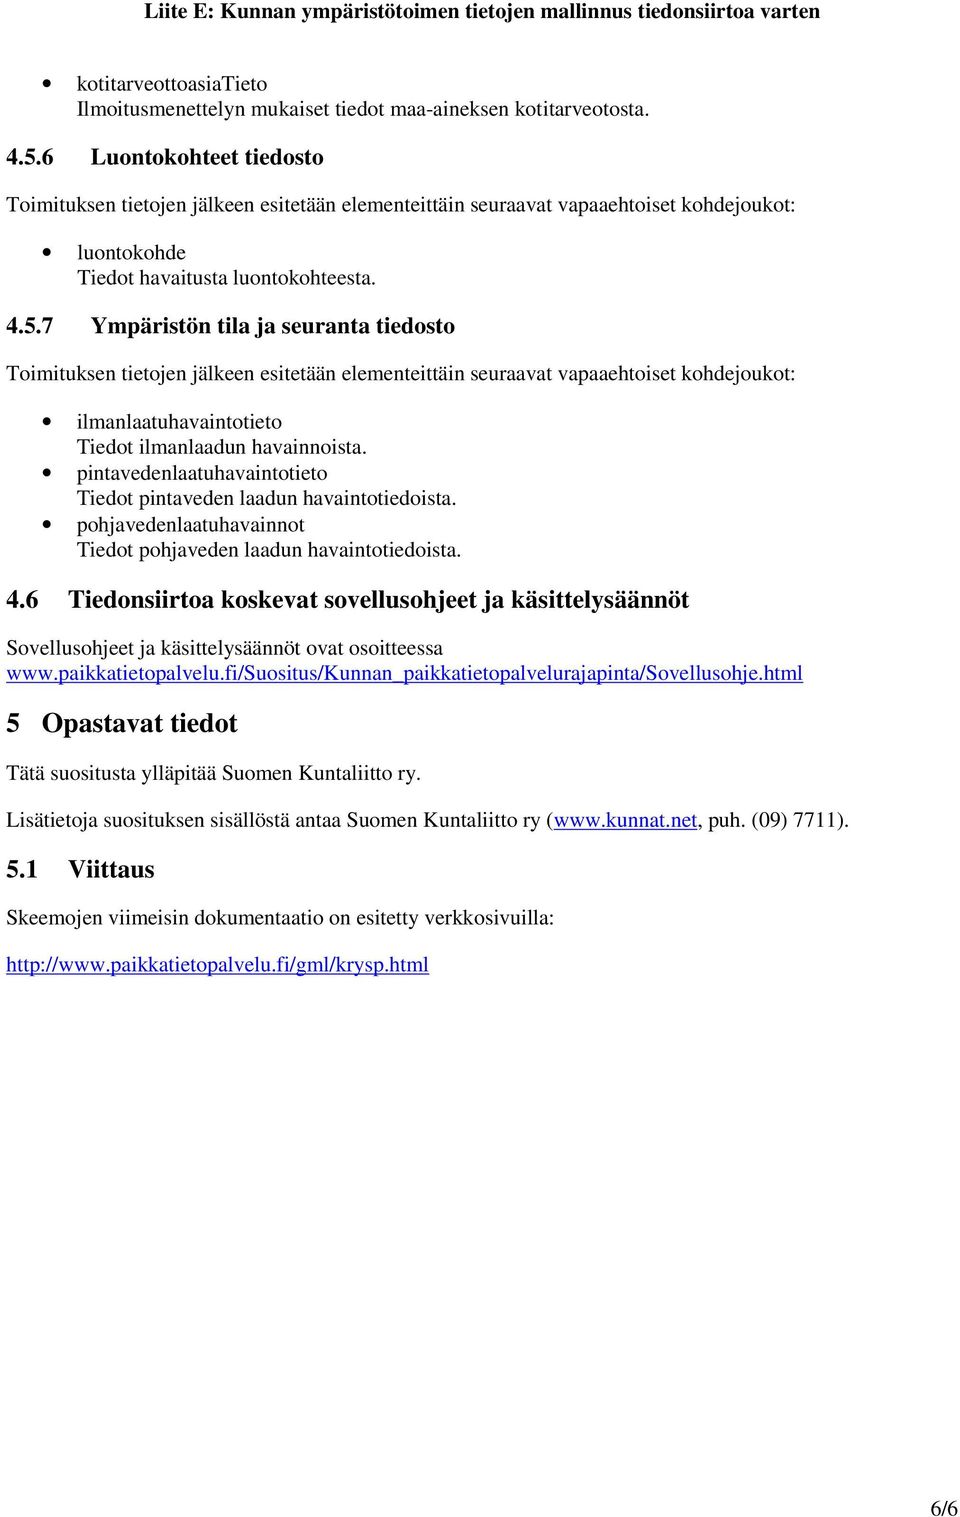 6 Tiedonsiirtoa koskevat sovellusohjeet ja käsittelysäännöt Sovellusohjeet ja käsittelysäännöt ovat osoitteessa www.paikkatietopalvelu.fi/suositus/kunnan_paikkatietopalvelurajapinta/sovellusohje.